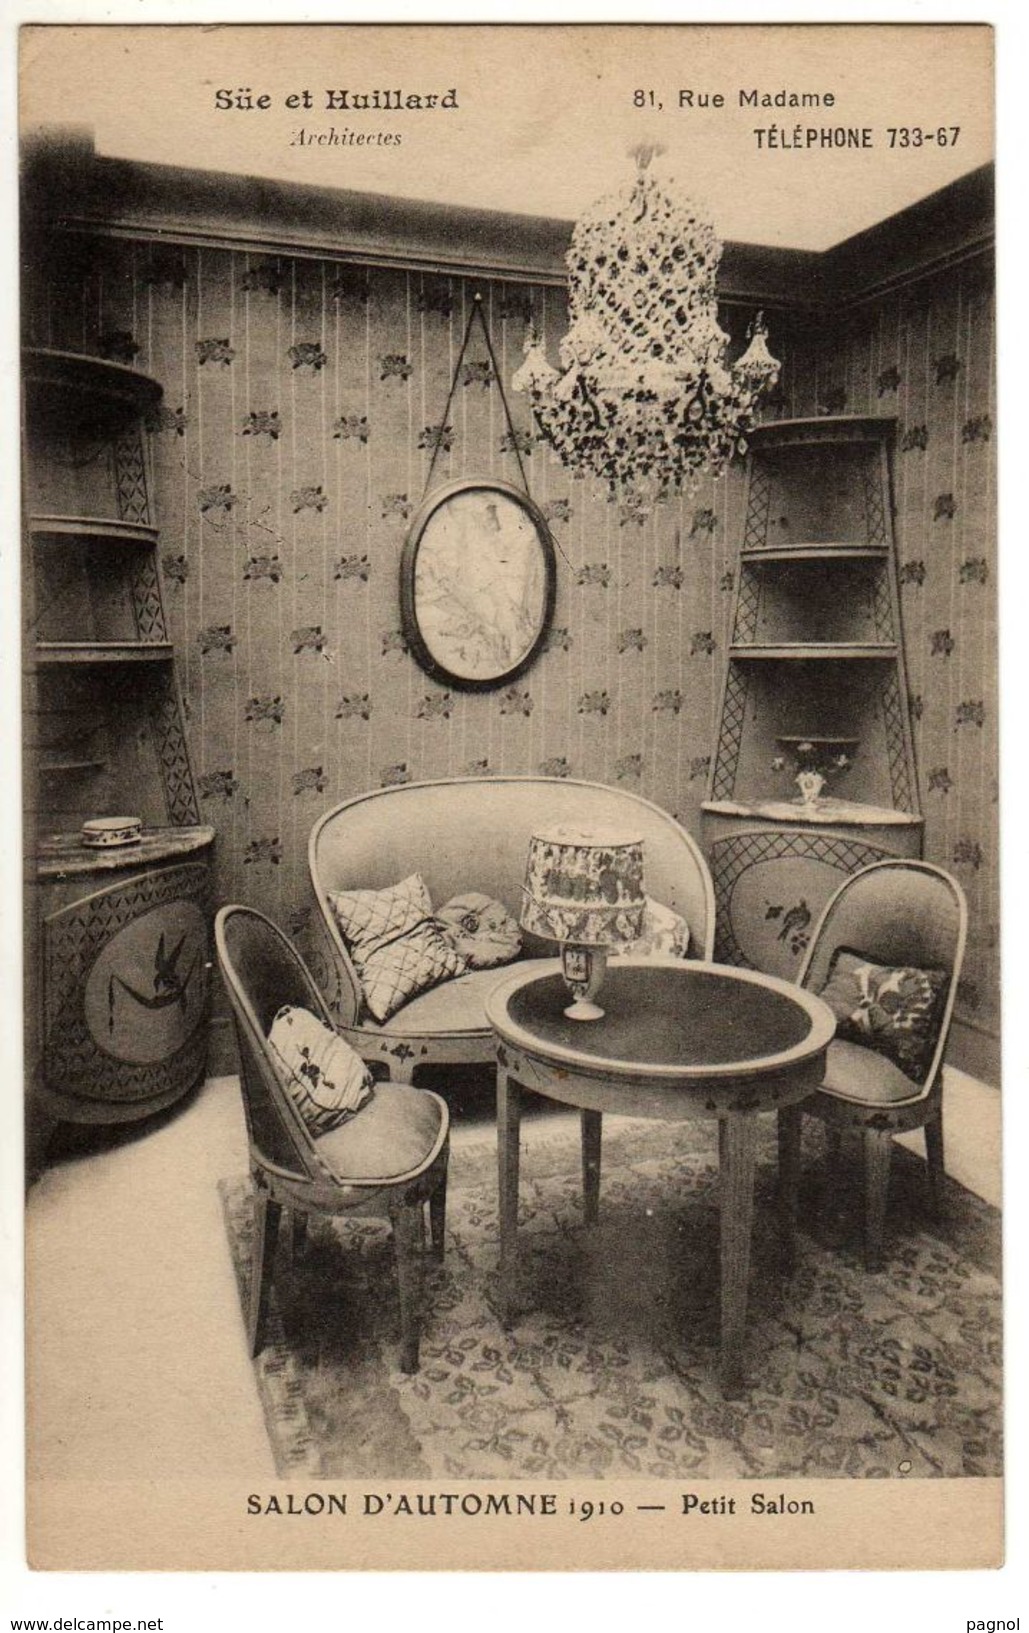 75 : Paris : Salon De Paris 1910 : Petit Salon : Architectes Süe Et Huillard - Mostre